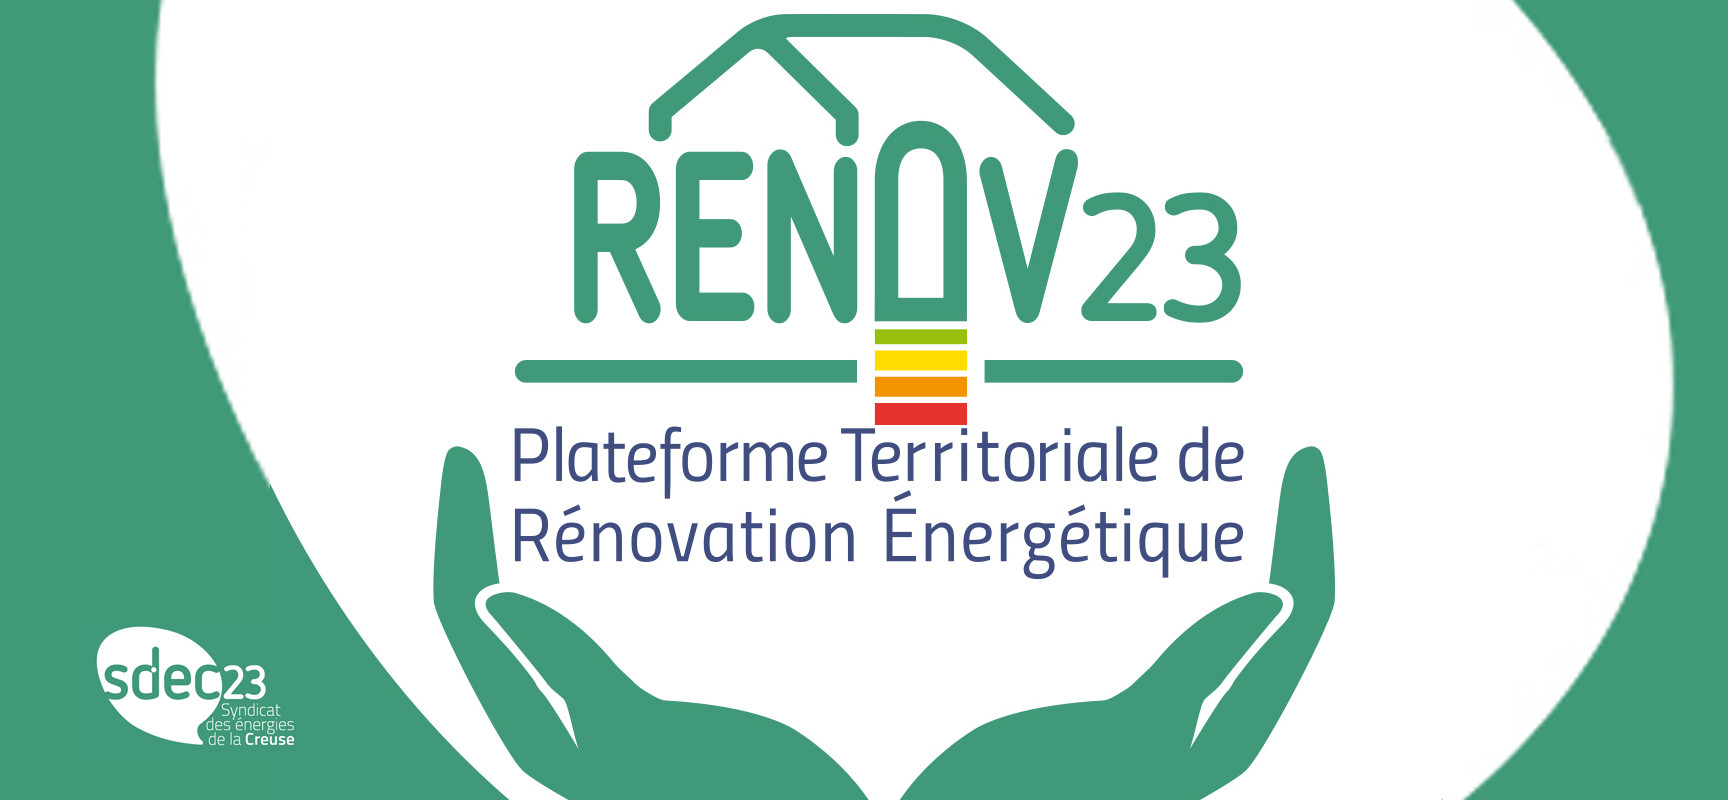 Rendez-vous Renov’23 pour vous aider à monter votre dossier de rénovation énergétique – octobre 2023